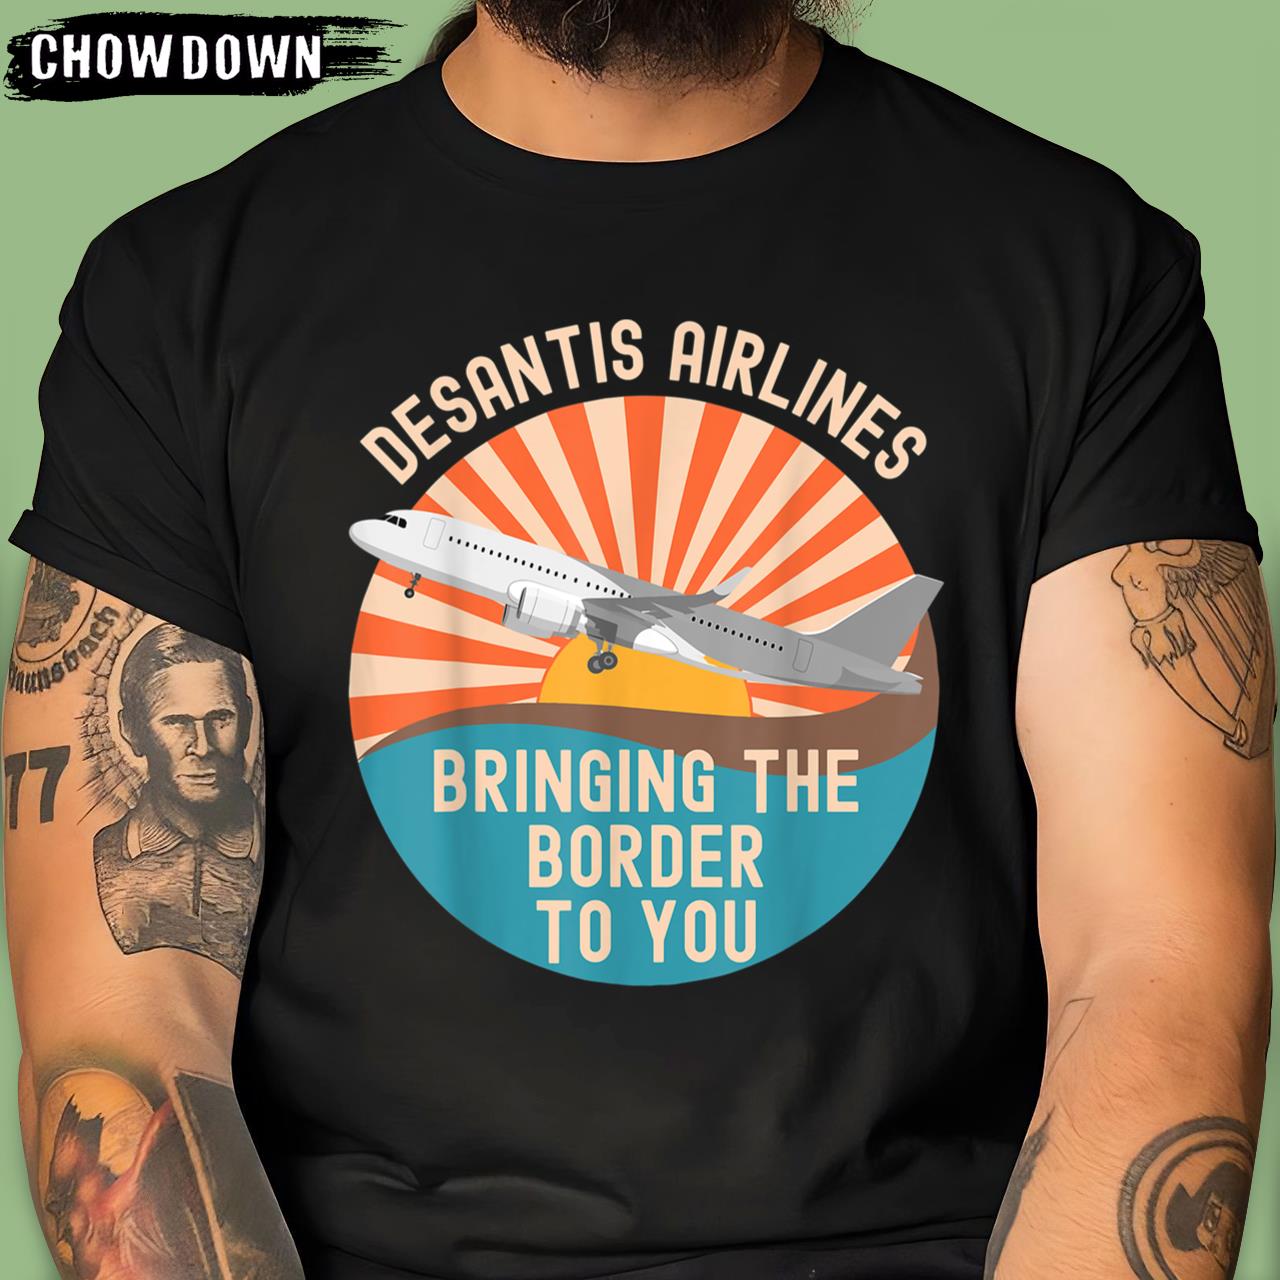 DeSantis Airlines Marthas Vineyard Meme 2022 Political Funny DeSantis Airlines T-Shirt